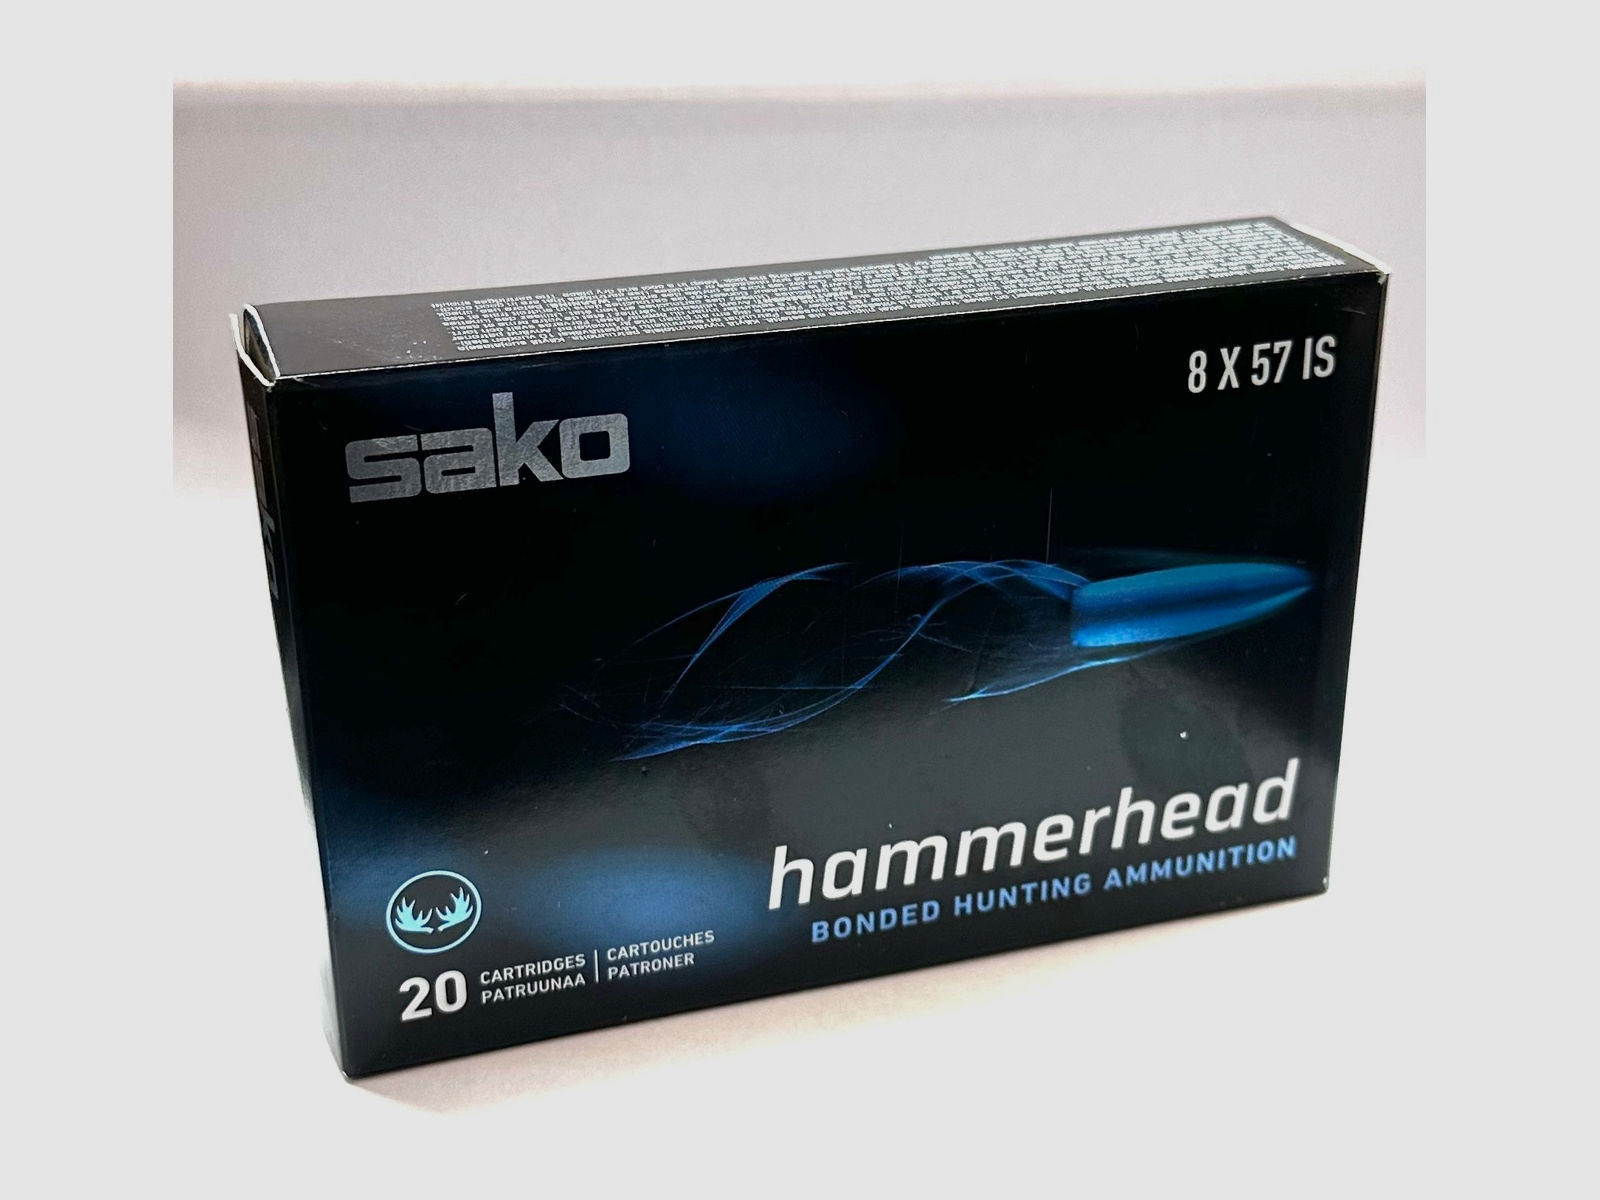 Sako 133001600 8x57 IS Hammerhead SP 13,0g 200grs. Büchsenmunition 20 Stück